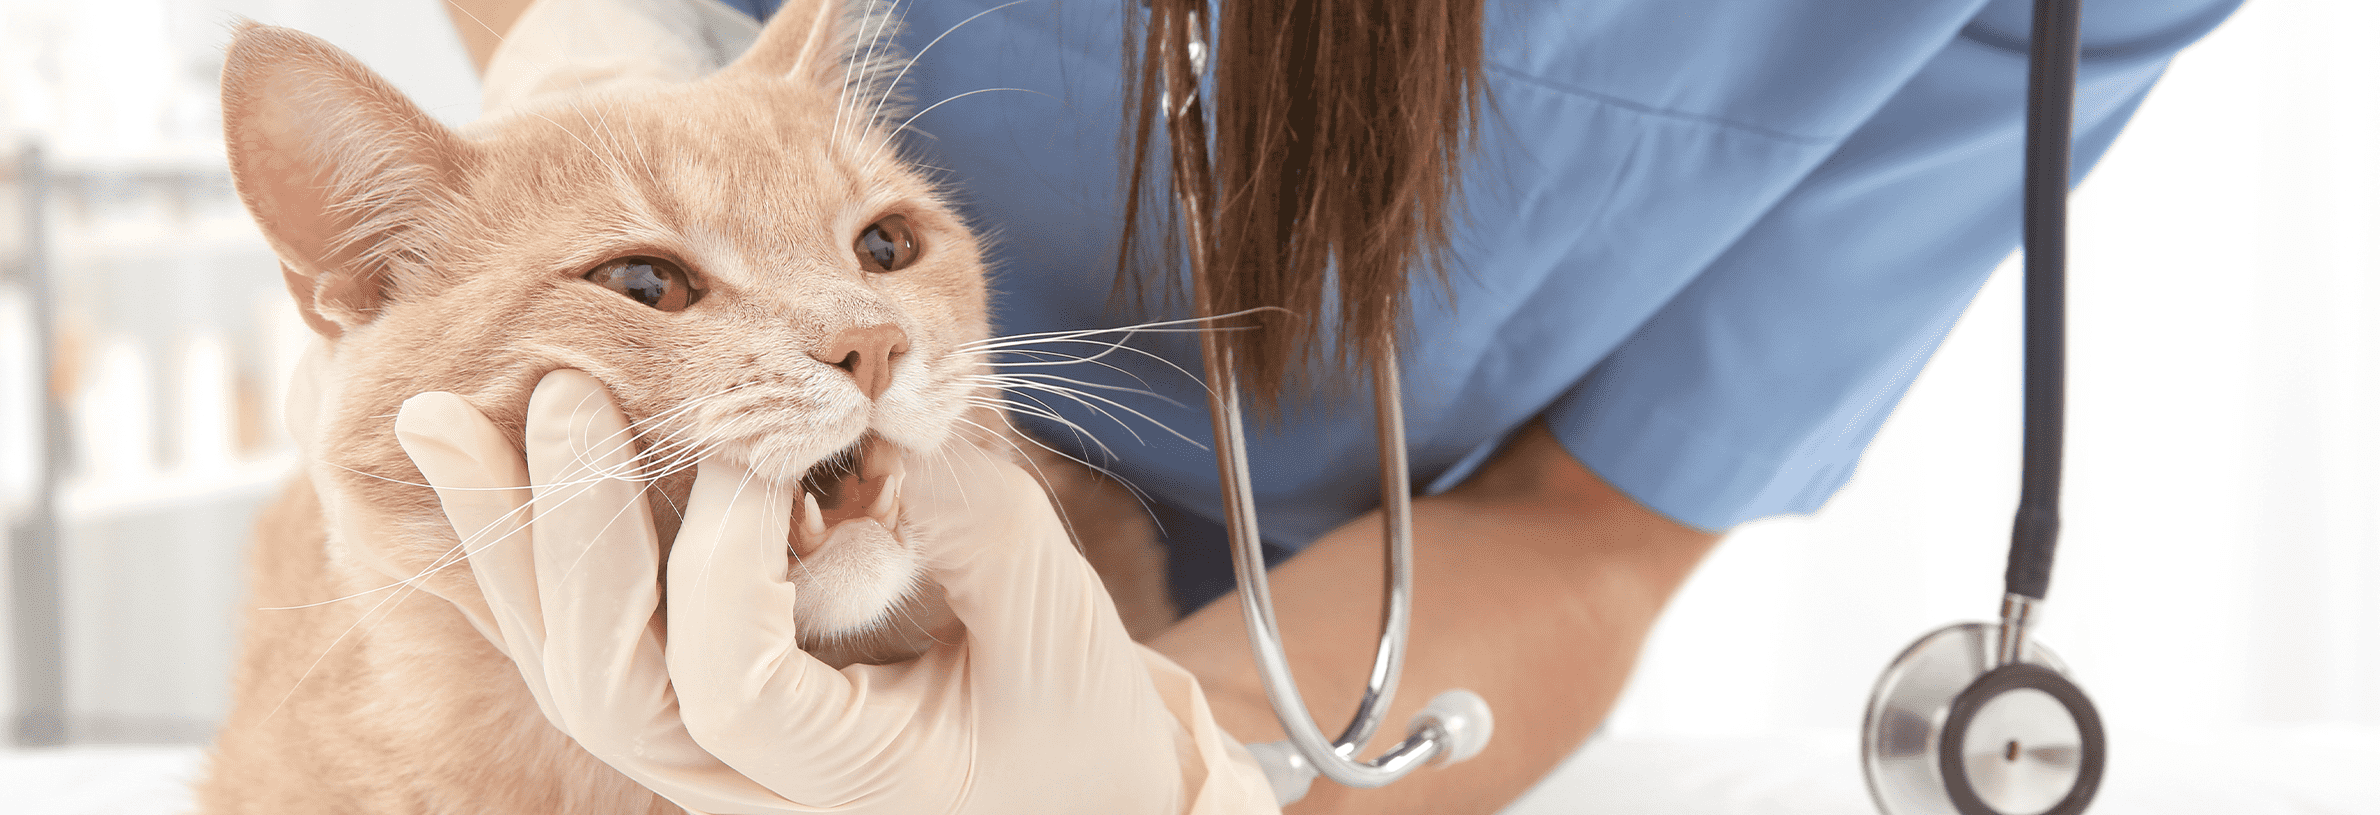 zorg voor een goede gezondheid van het gebit van je kat